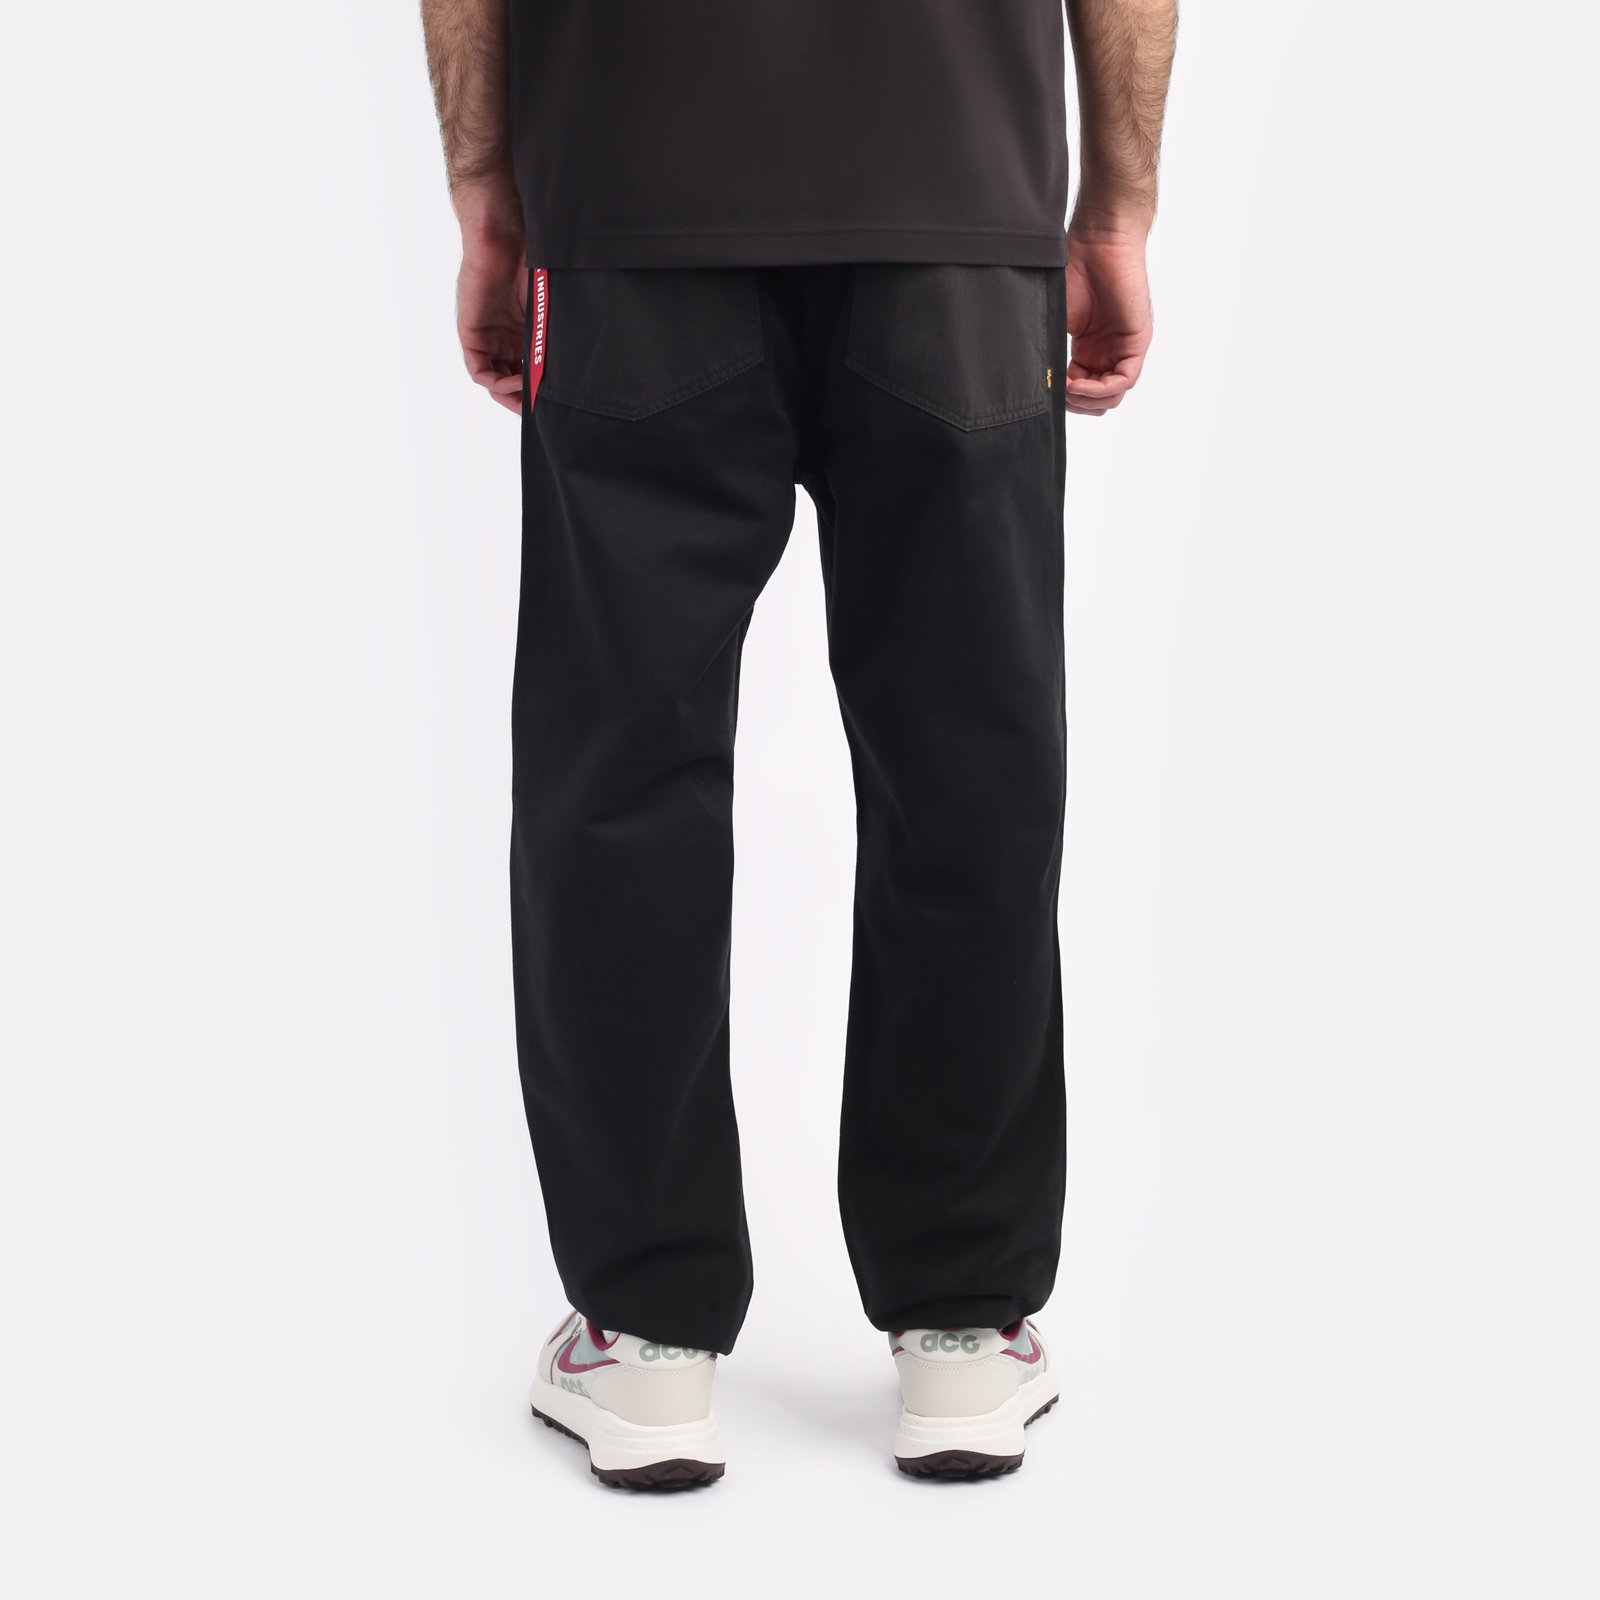 мужские брюки Alpha Industries Fatigue Pant  (MBO52500C1-black)  - цена, описание, фото 2